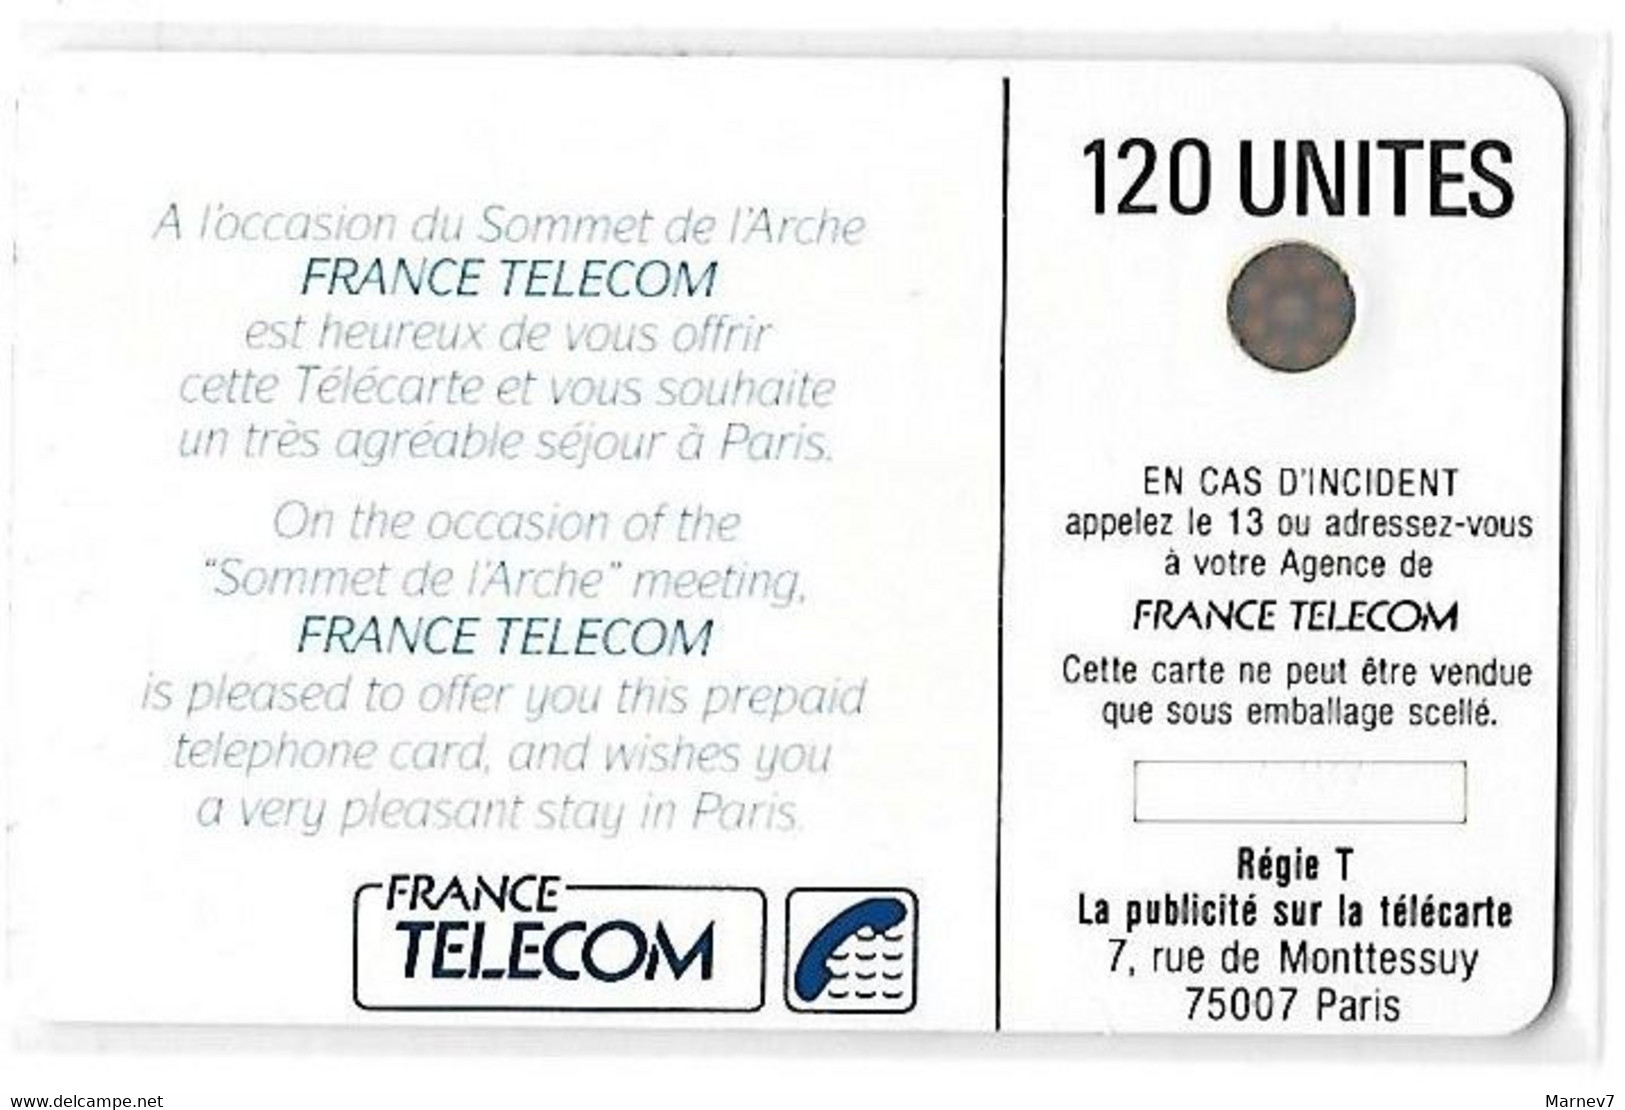 FTE Télécarte - SOMMET DE L'ARCHE - 14 Juillet 1989 - 120 Unités - - Interner Gebrauch